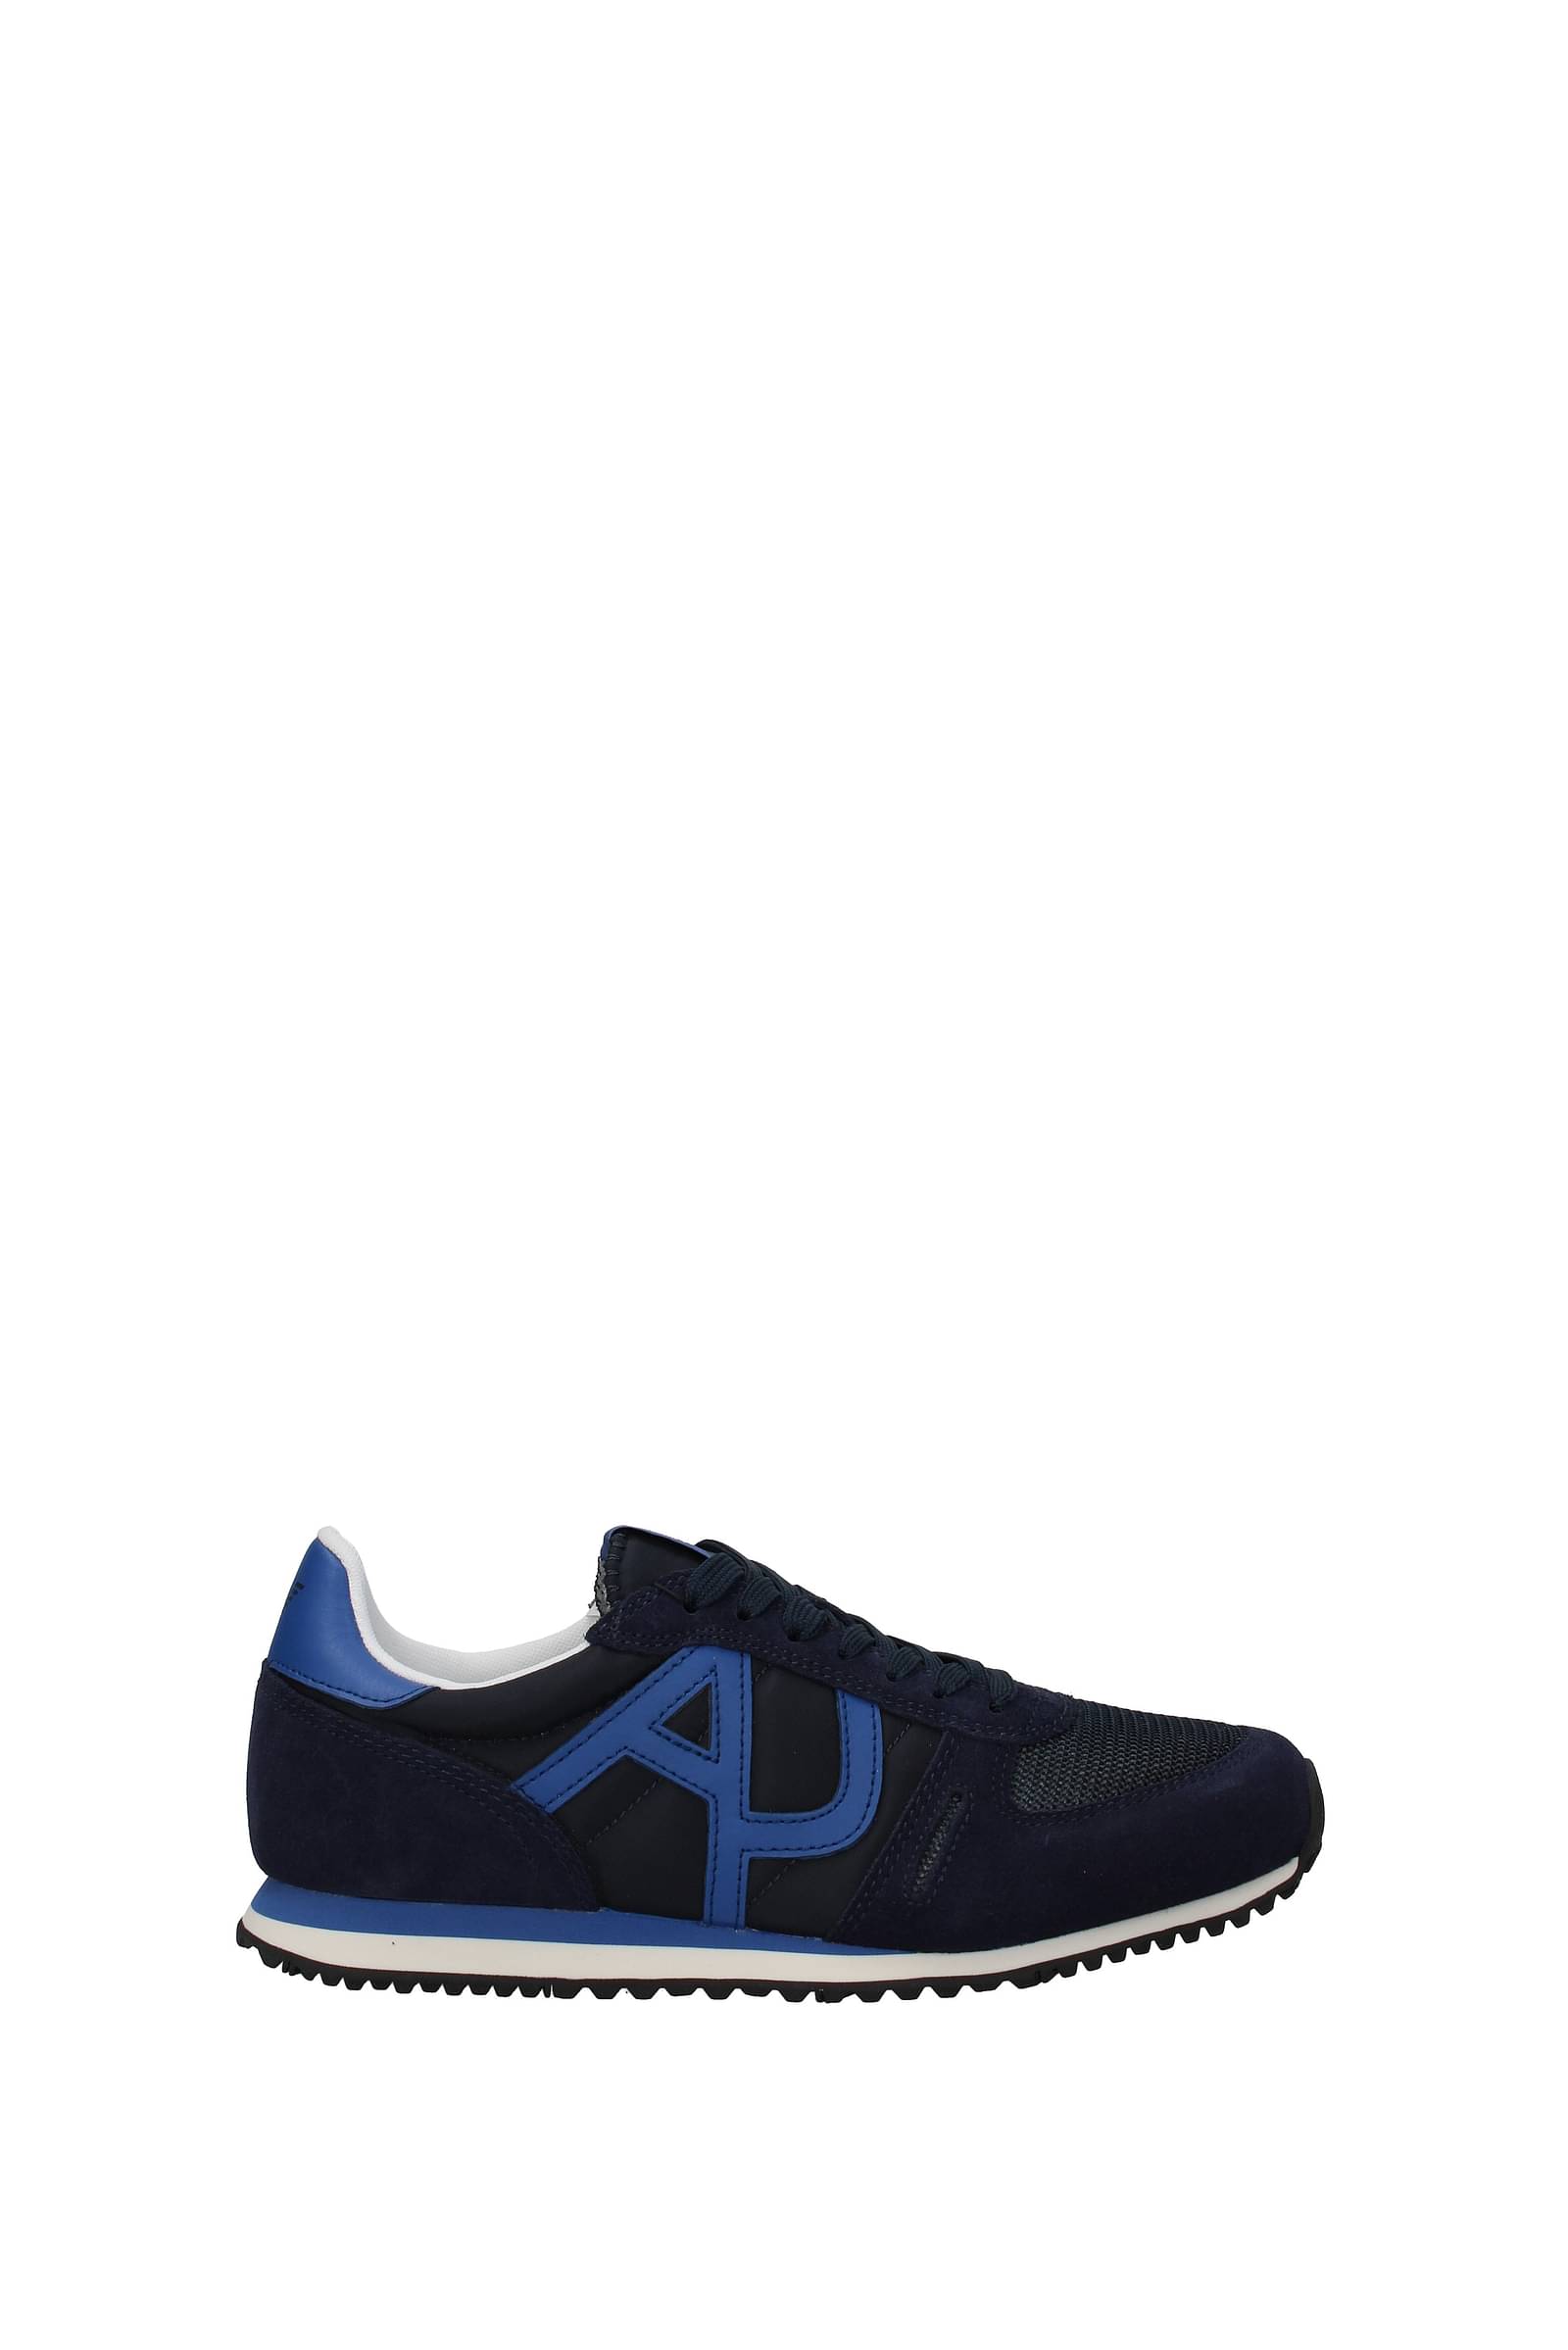 Armani Jeans Men's Denim Sneaker Fashion Sneaker CM524-44-15 Sz 6.5 | eBay